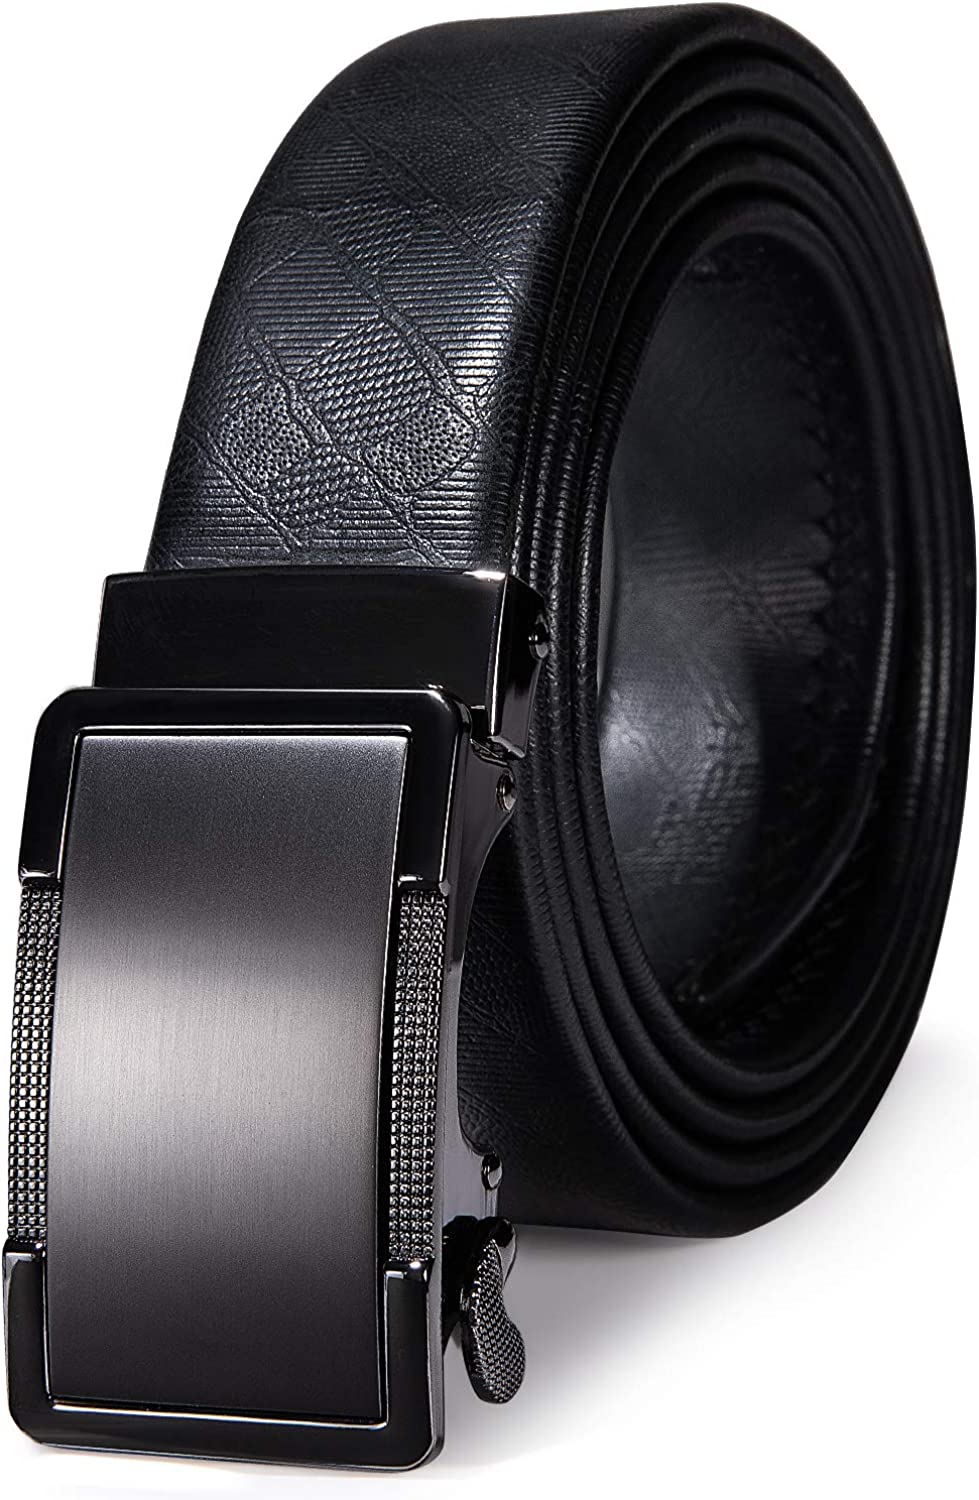 Dubulle-Men's Men's Designer Belt Genuine Leather Black Fashion